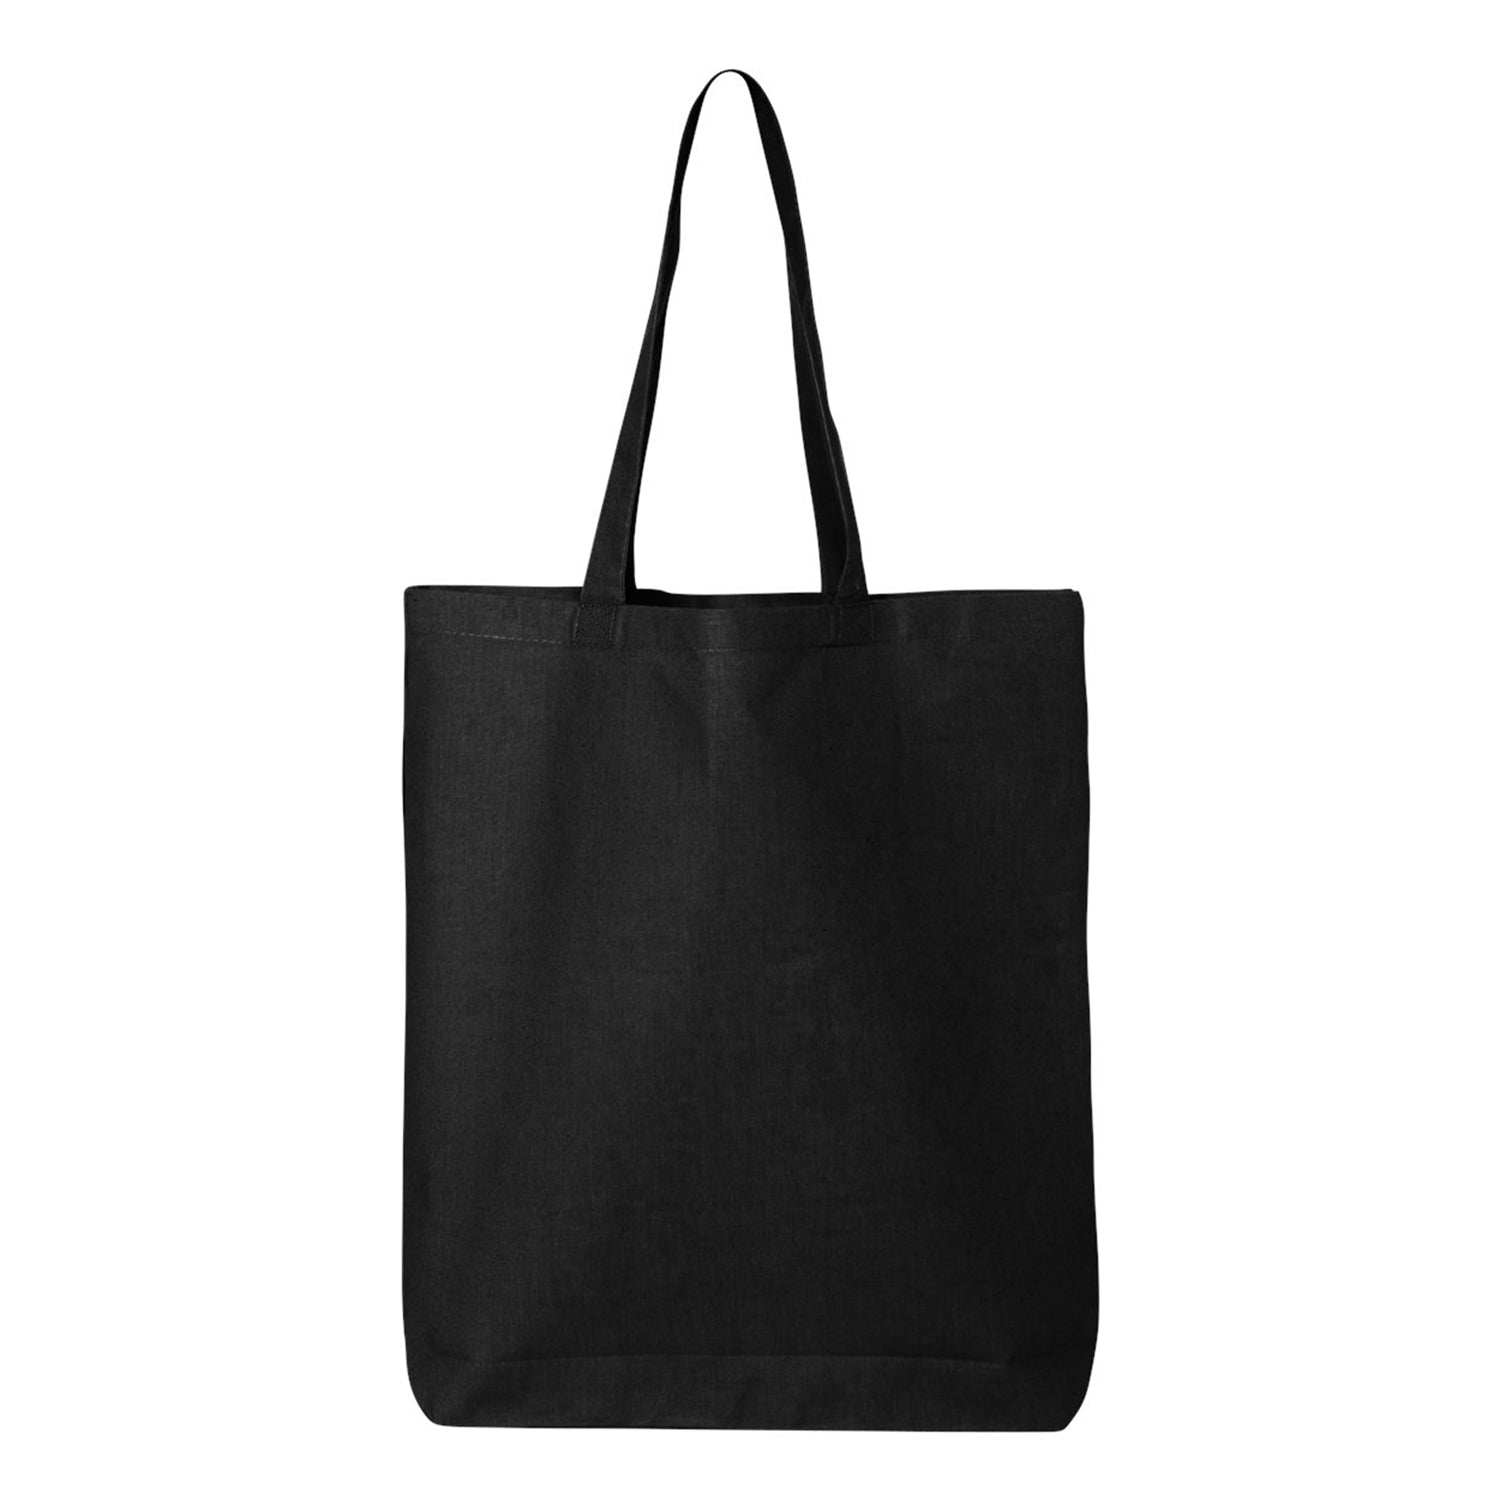 6 oz. co Cotton Tote Reusable Shopping Bag